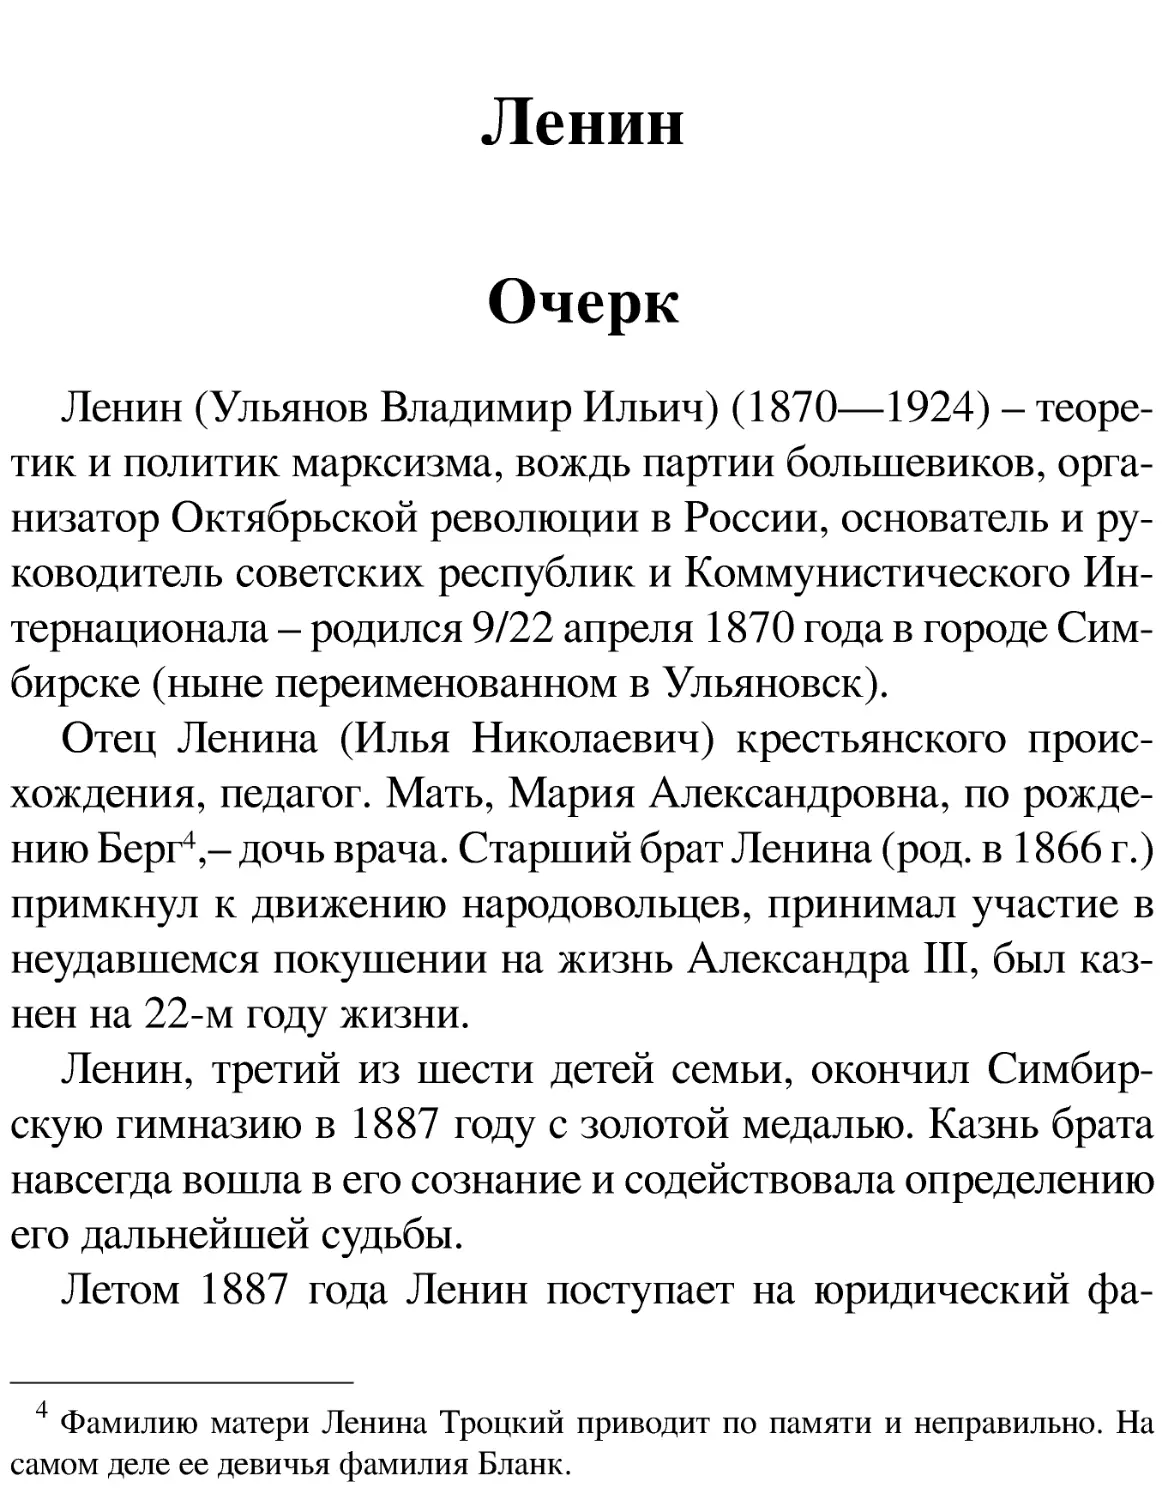 Ленин
Очерк